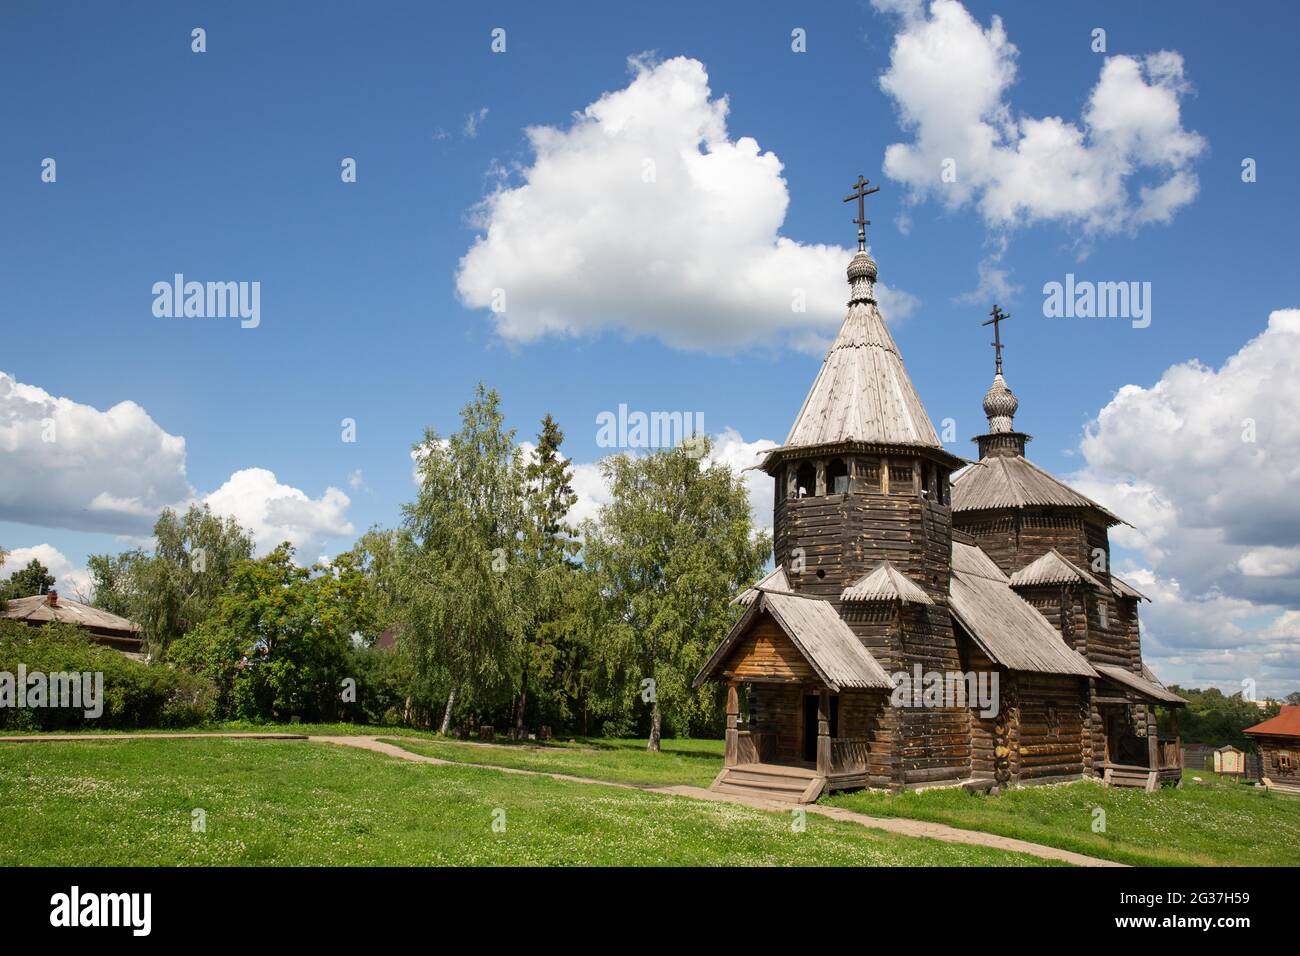 Musée de l'architecture en bois, Suzdal, Golden Ring, Russie Banque D'Images